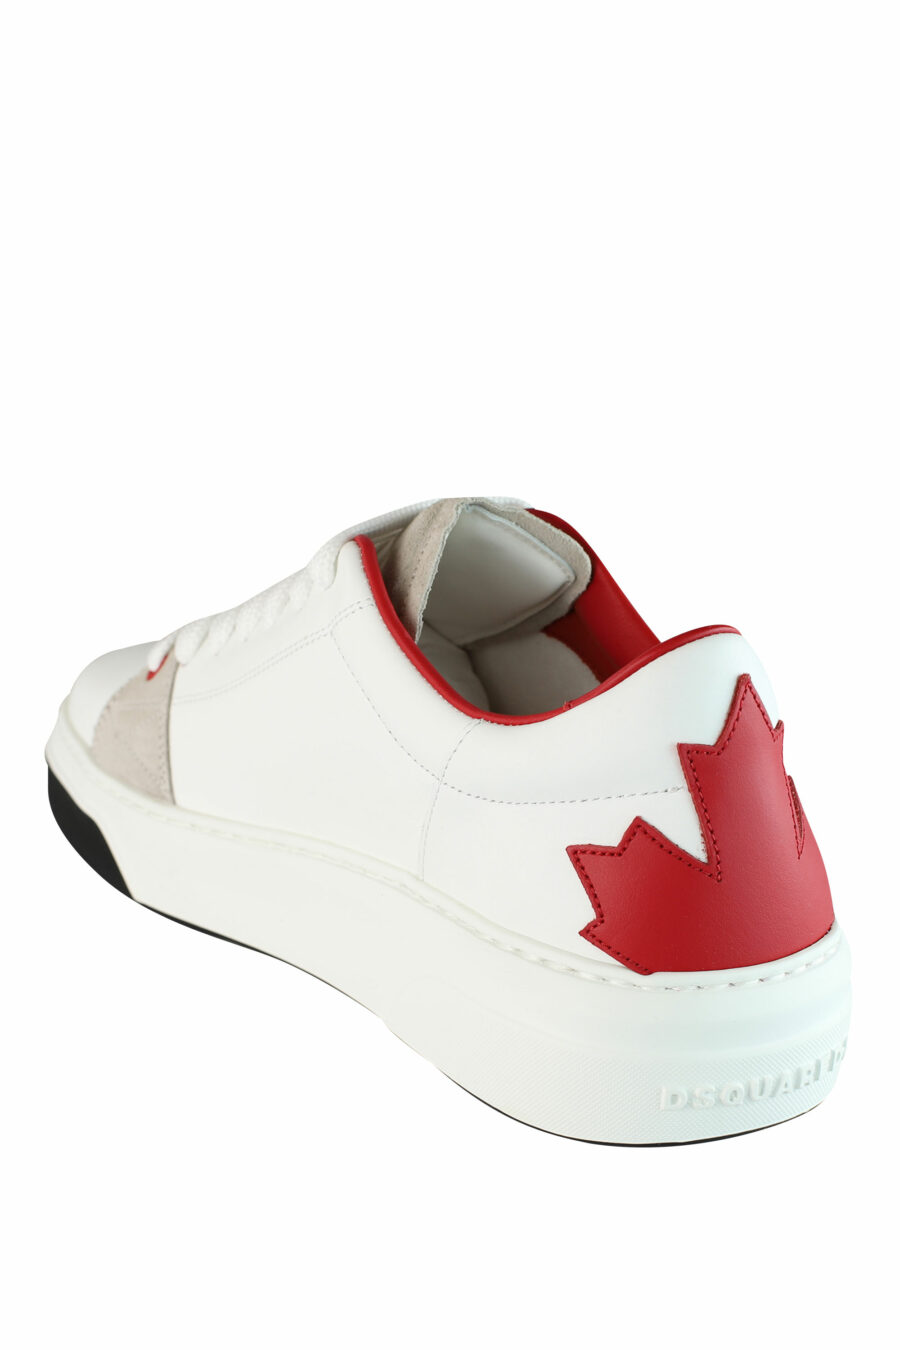 Zapatillas blancas con logo hoja roja y detalles beige - IMG 1440